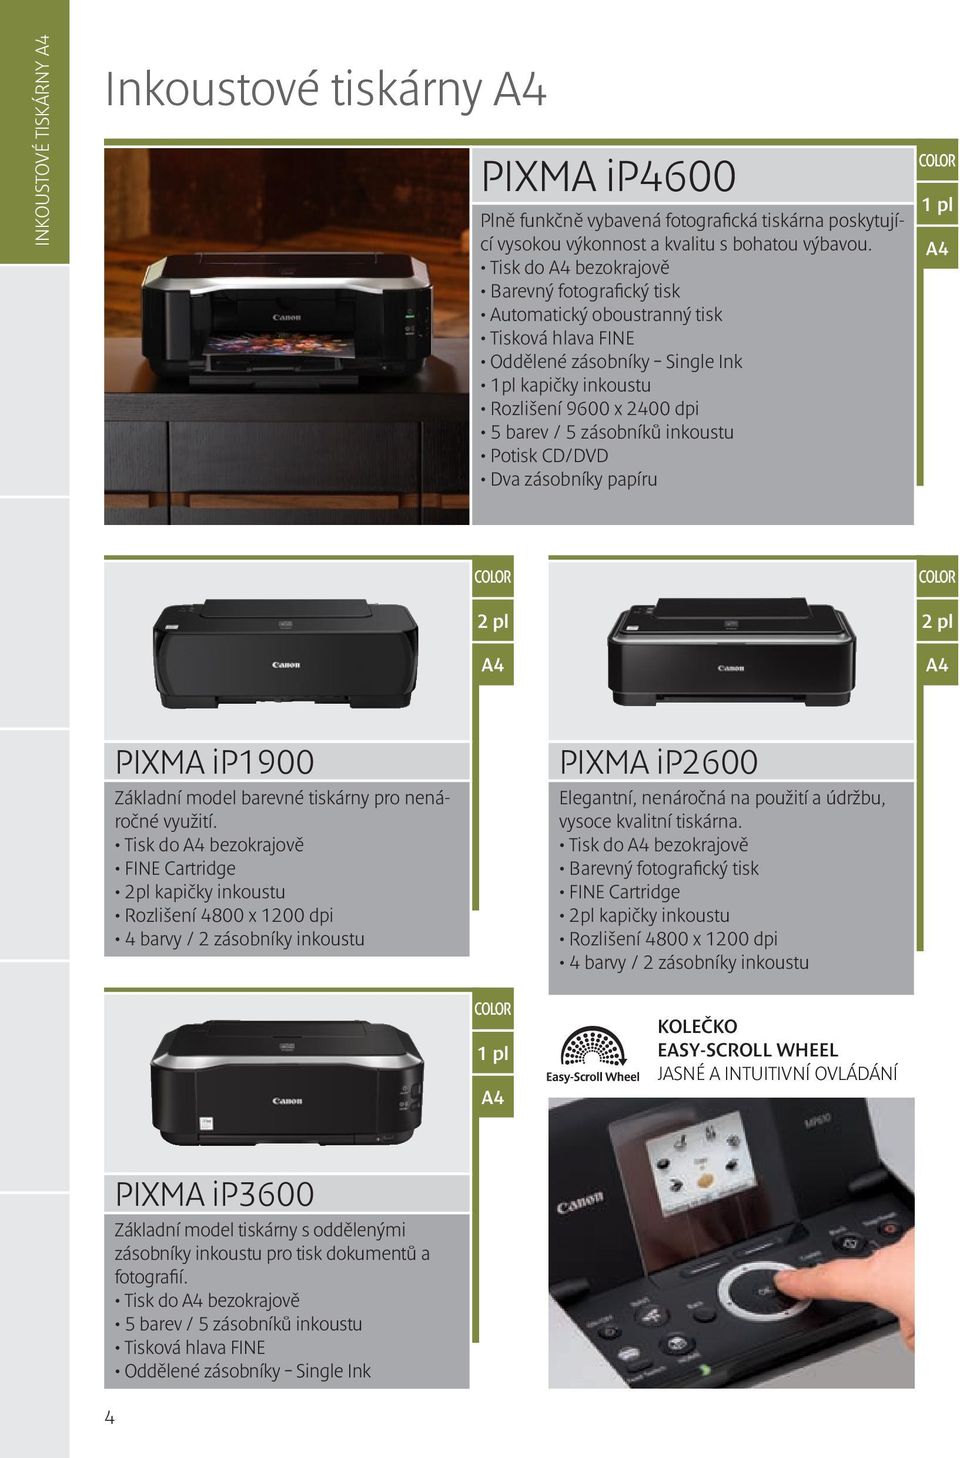 inkoustu Potisk CD/DVD Dva zásobníky papíru 1 pl 2 pl 2 pl PIXMA ip1900 Základní model barevné tiskárny pro nenáročné využití.